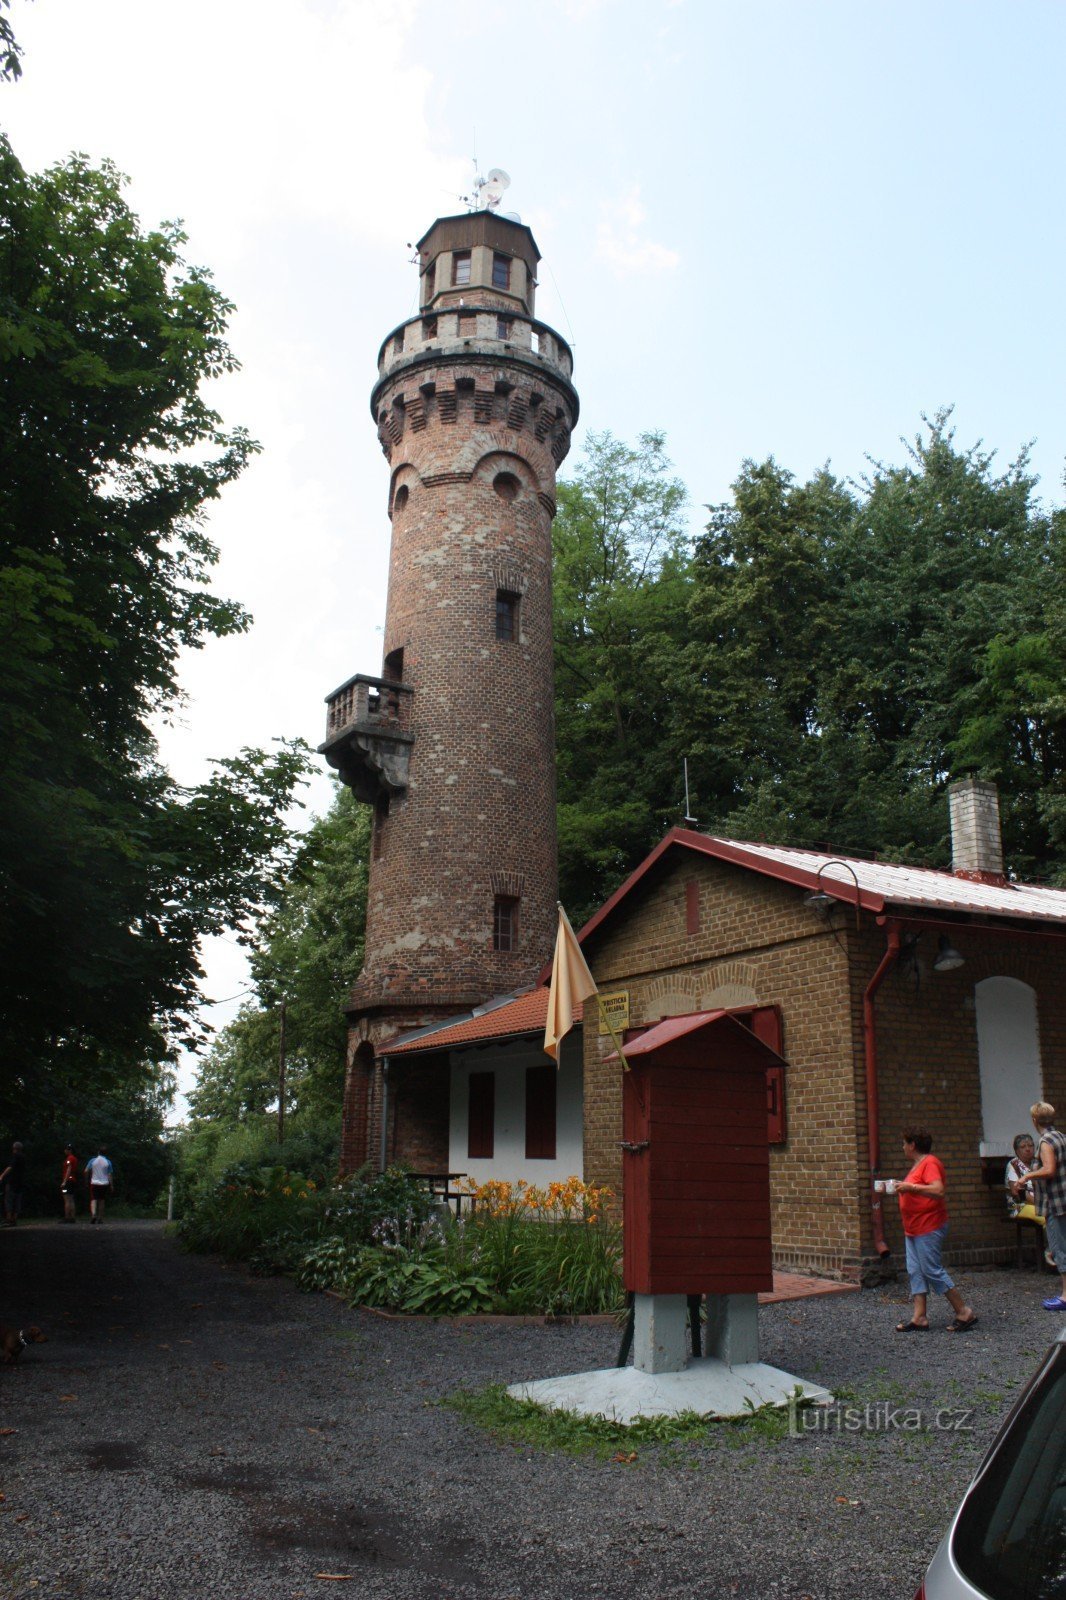 Torre de observação de pedra em Frýdlant